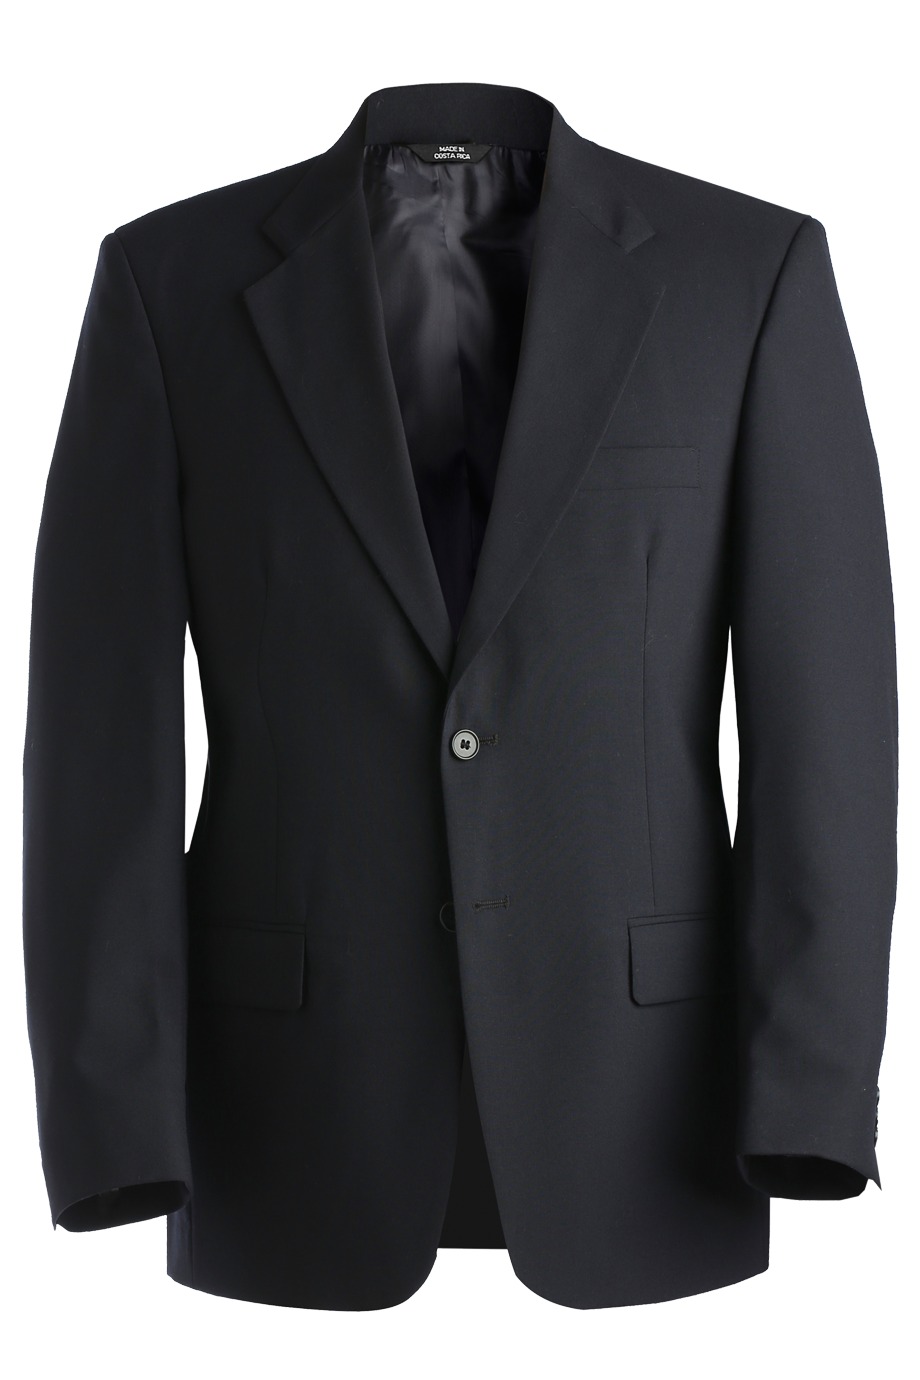 Edwards Garment 3680 - Suit Coat